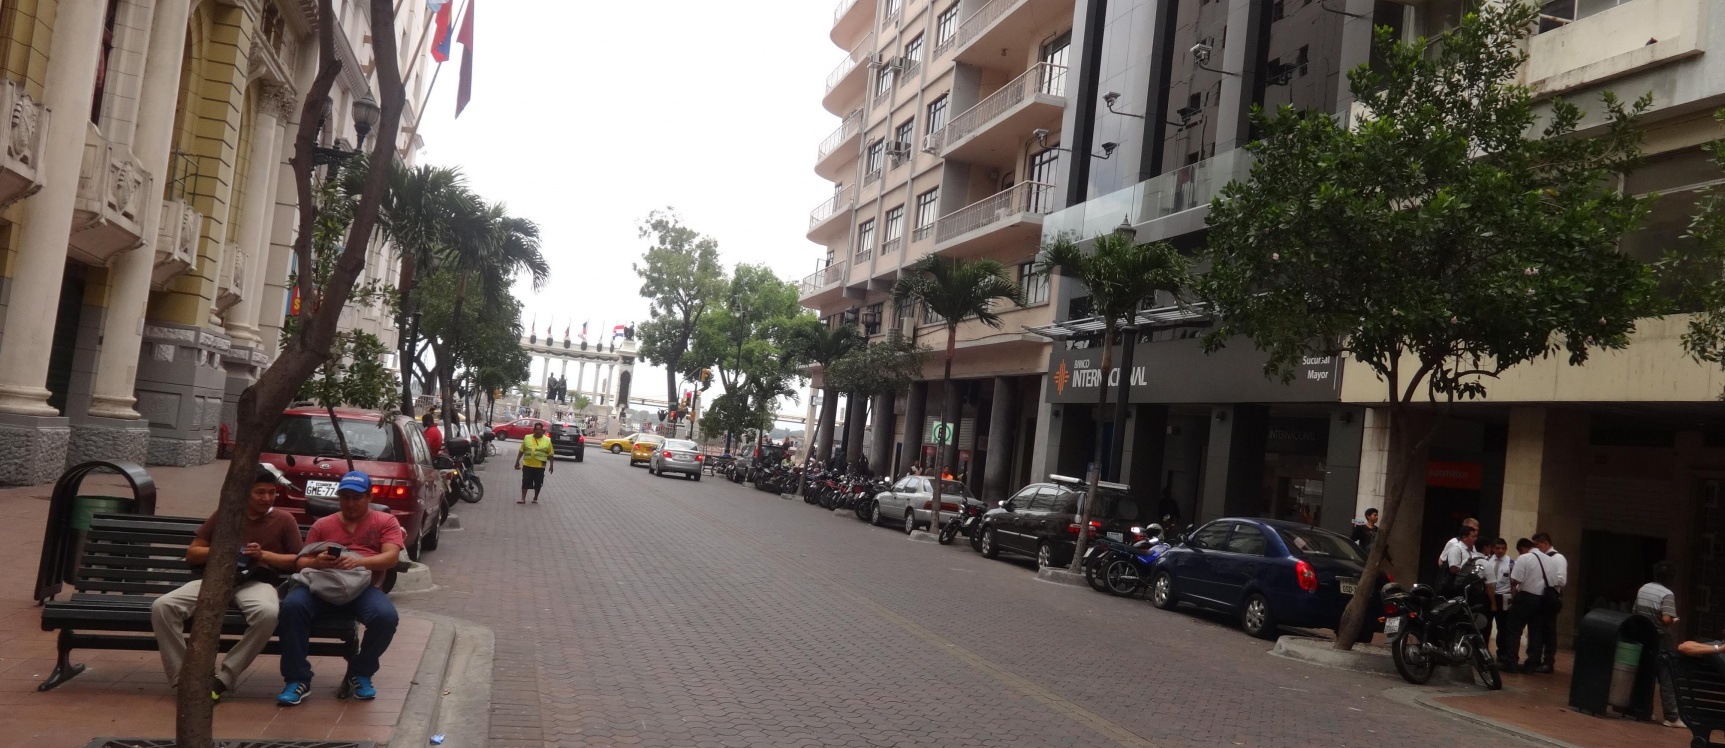 GeoBienes - Local comercial de alquiler en el centro de Guayaquil,  9 de Octubre y Malecon - Plusvalia Guayaquil Casas de venta y alquiler Inmobiliaria Ecuador